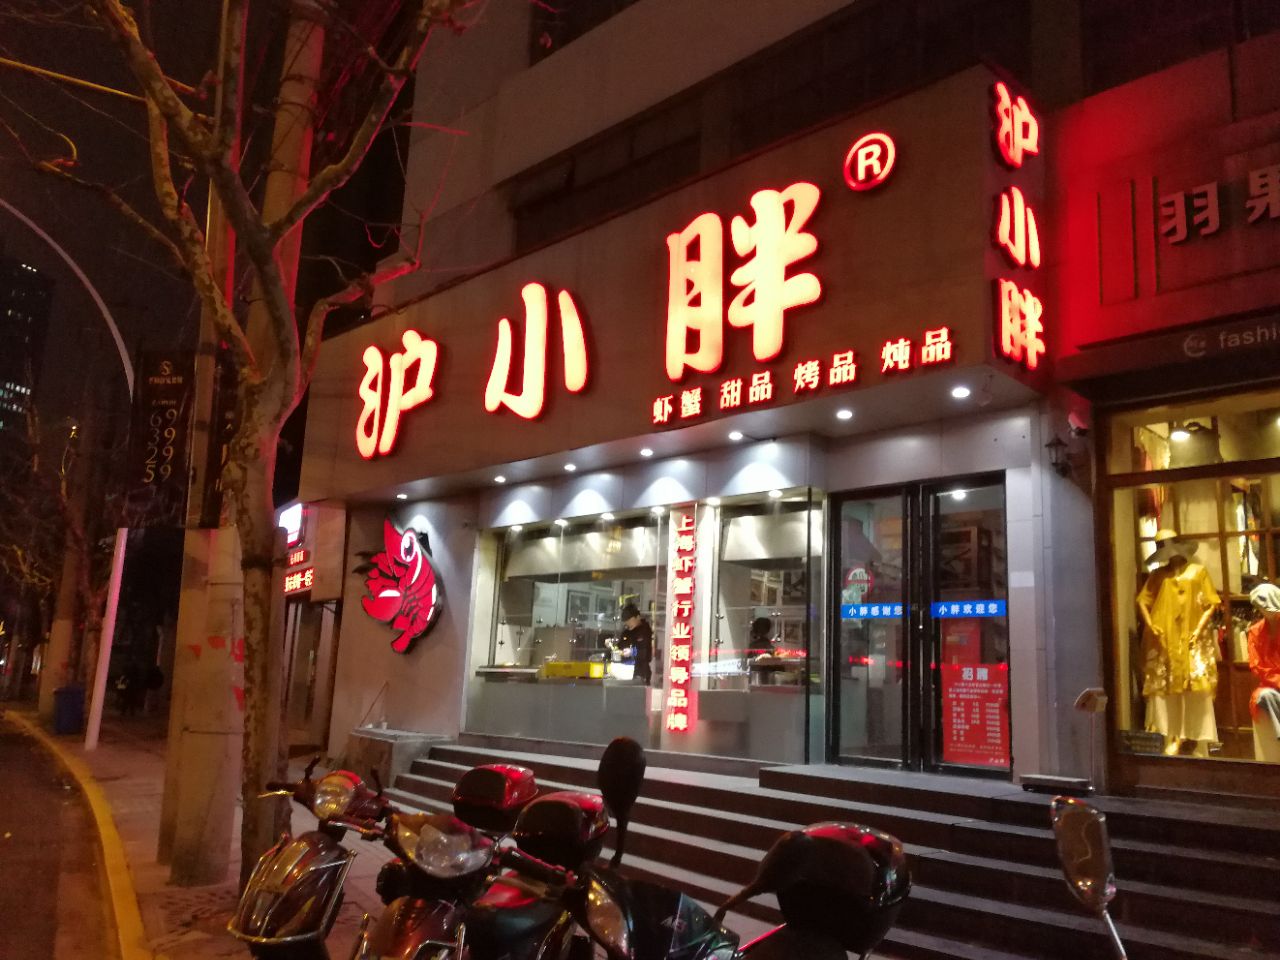 上海沪小胖龙虾(长寿店)好吃吗,沪小胖龙虾(长寿店)味道怎么样,环境